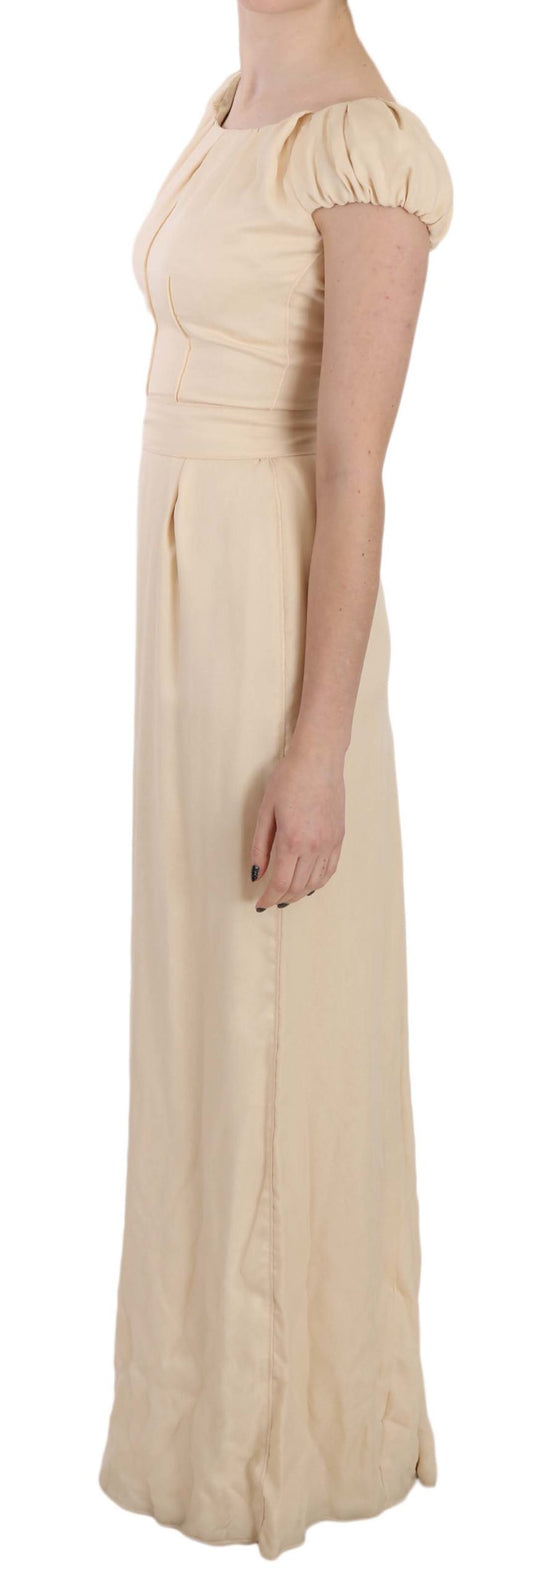 Beige Silk Column Cap Sleeve Gown Dress